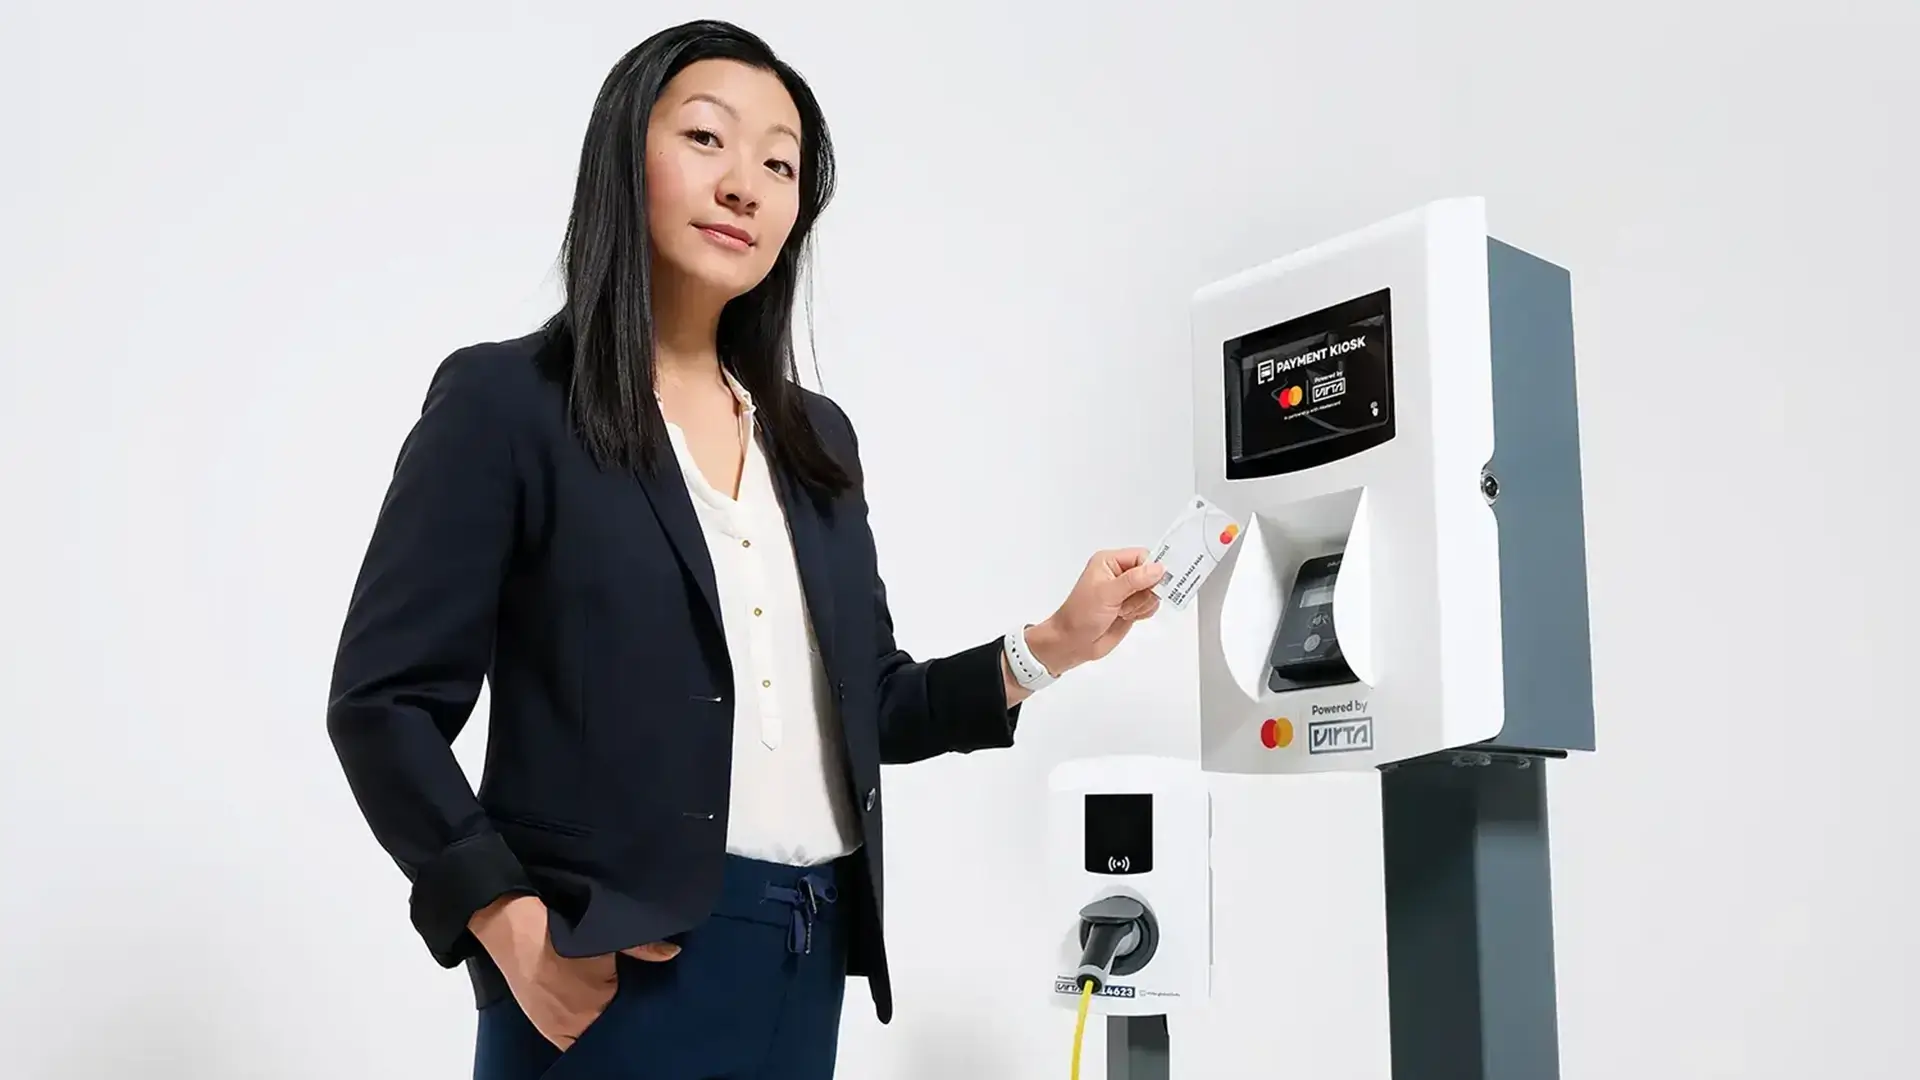 I partnerskap med Mastercard och Worldpay from FIS, lanserar Virta nu Payment Kiosk, en ny standard för säker och pålitlig kortbetalning vid utomhusladdning av elbilar